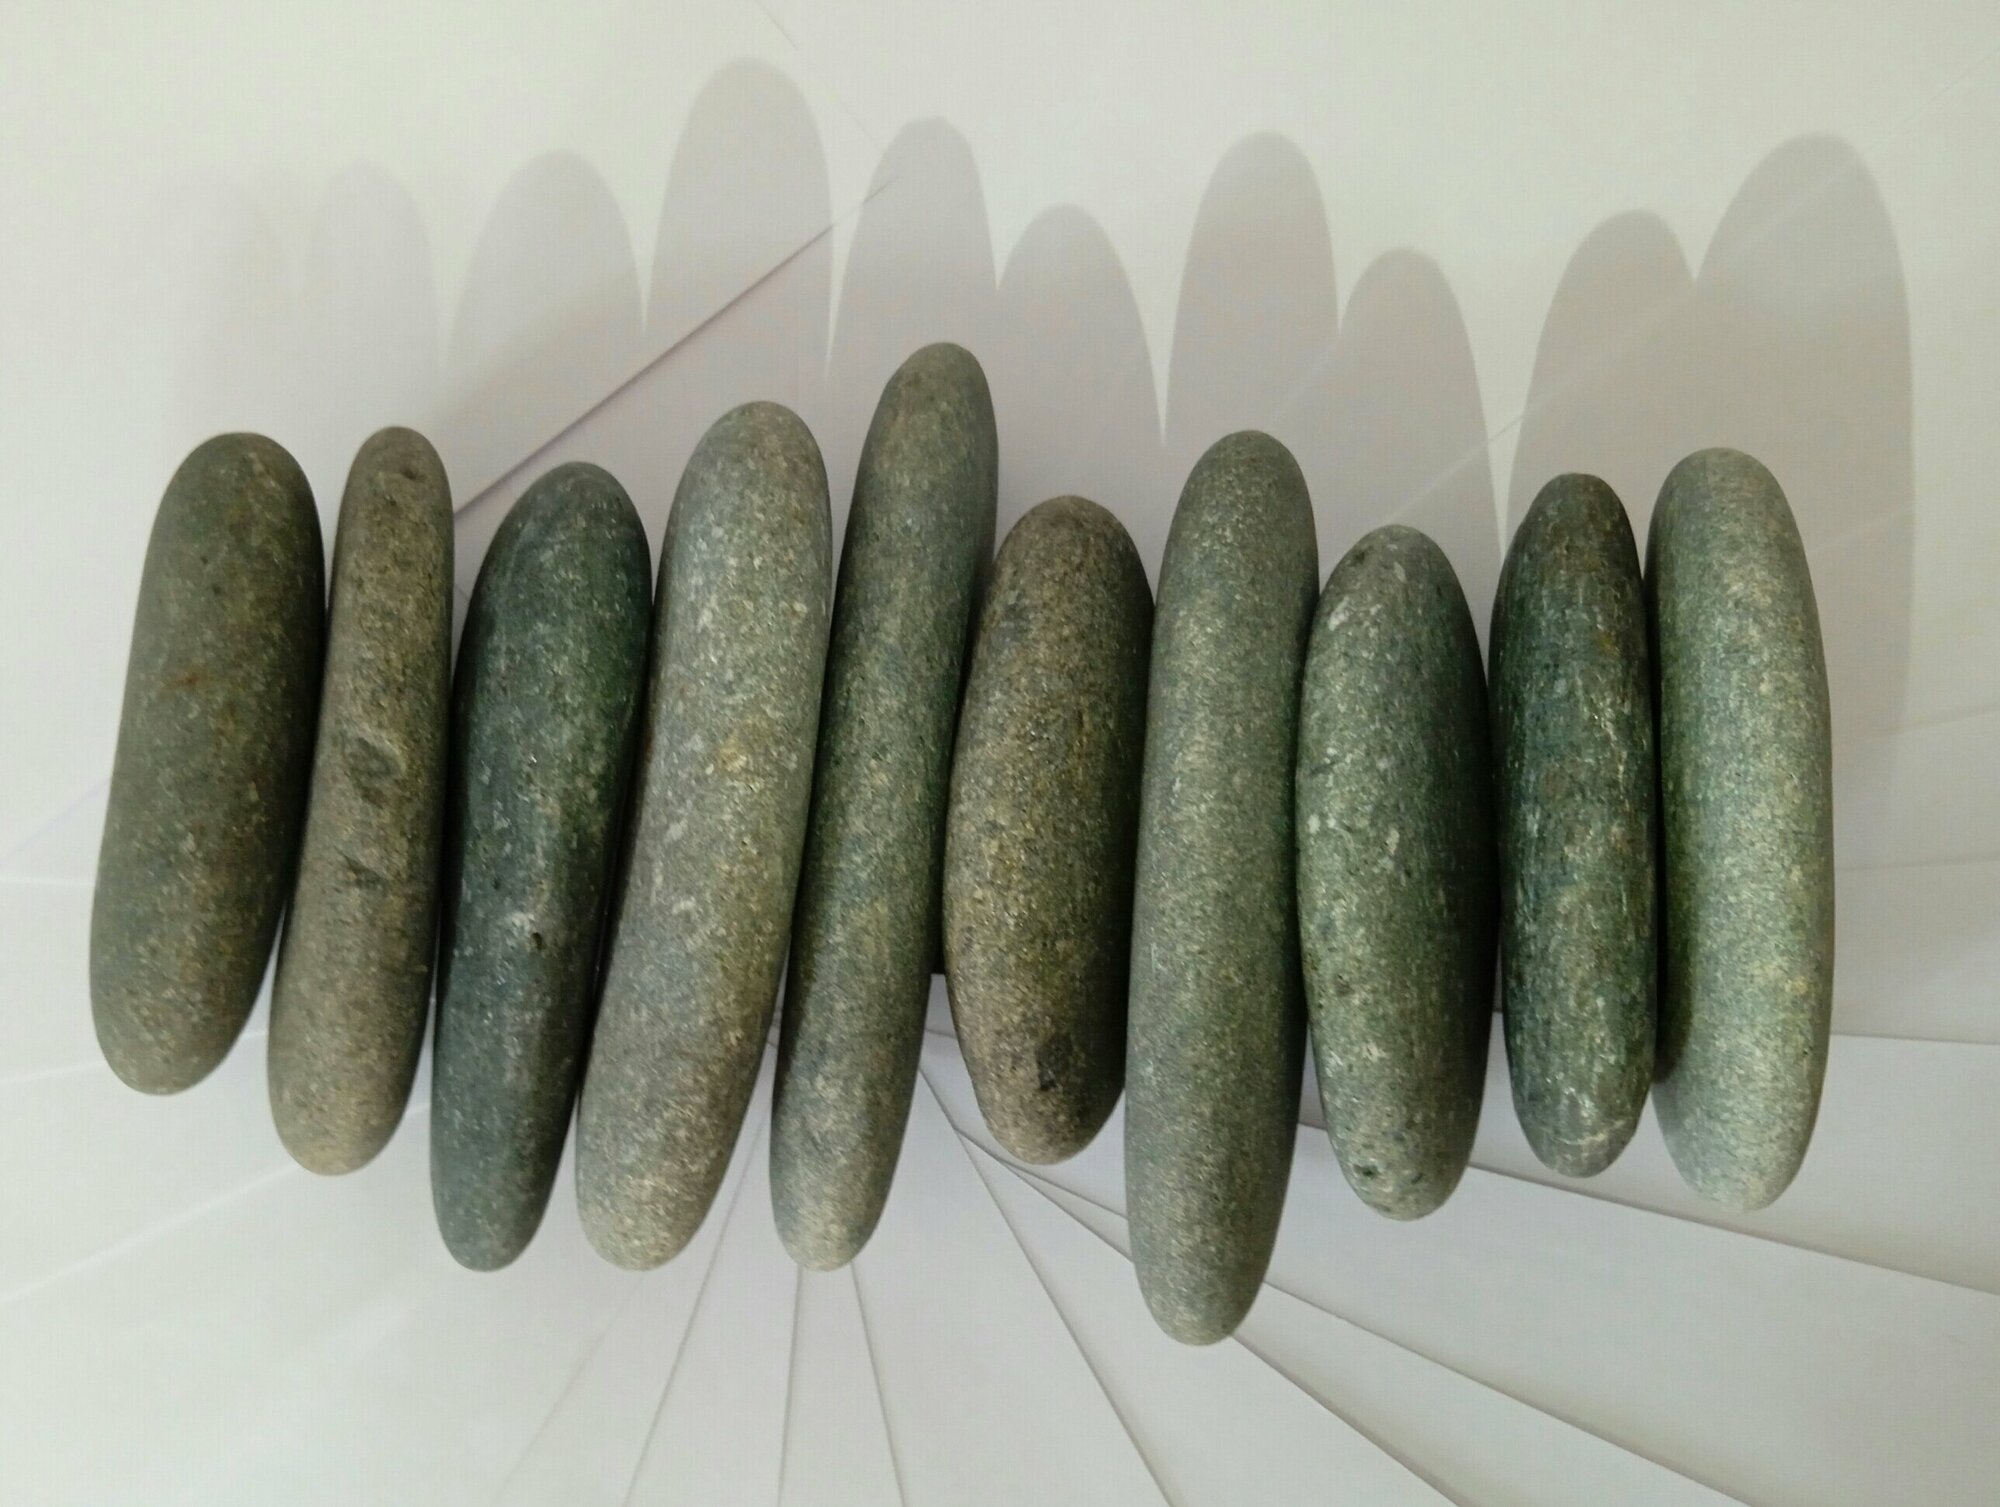 Галька плоская крупная, камень для росписи и поделок, 7 см, 10 шт